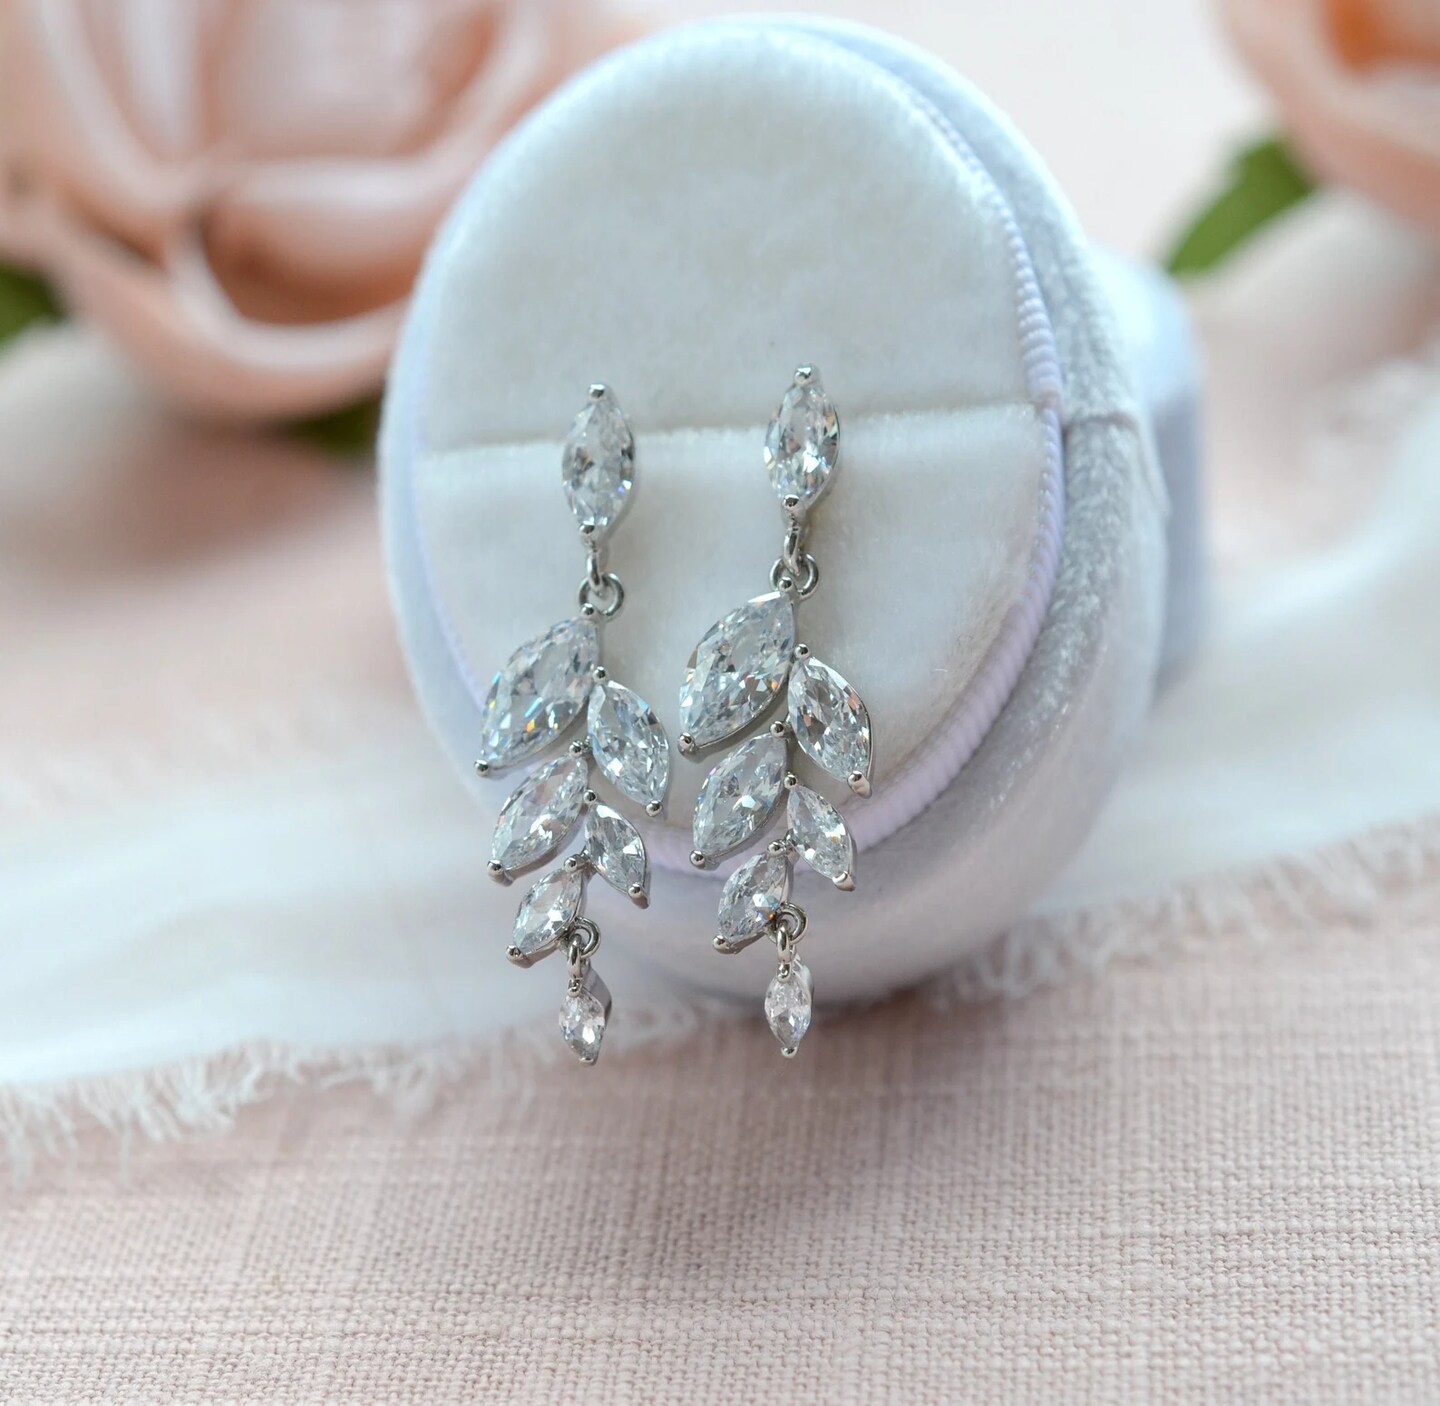 Unique wedding jewelry - Pearl bridal earrings - Pearl cluster drop earrings  - Style #2307 | Twigs & Honey ®, LLC